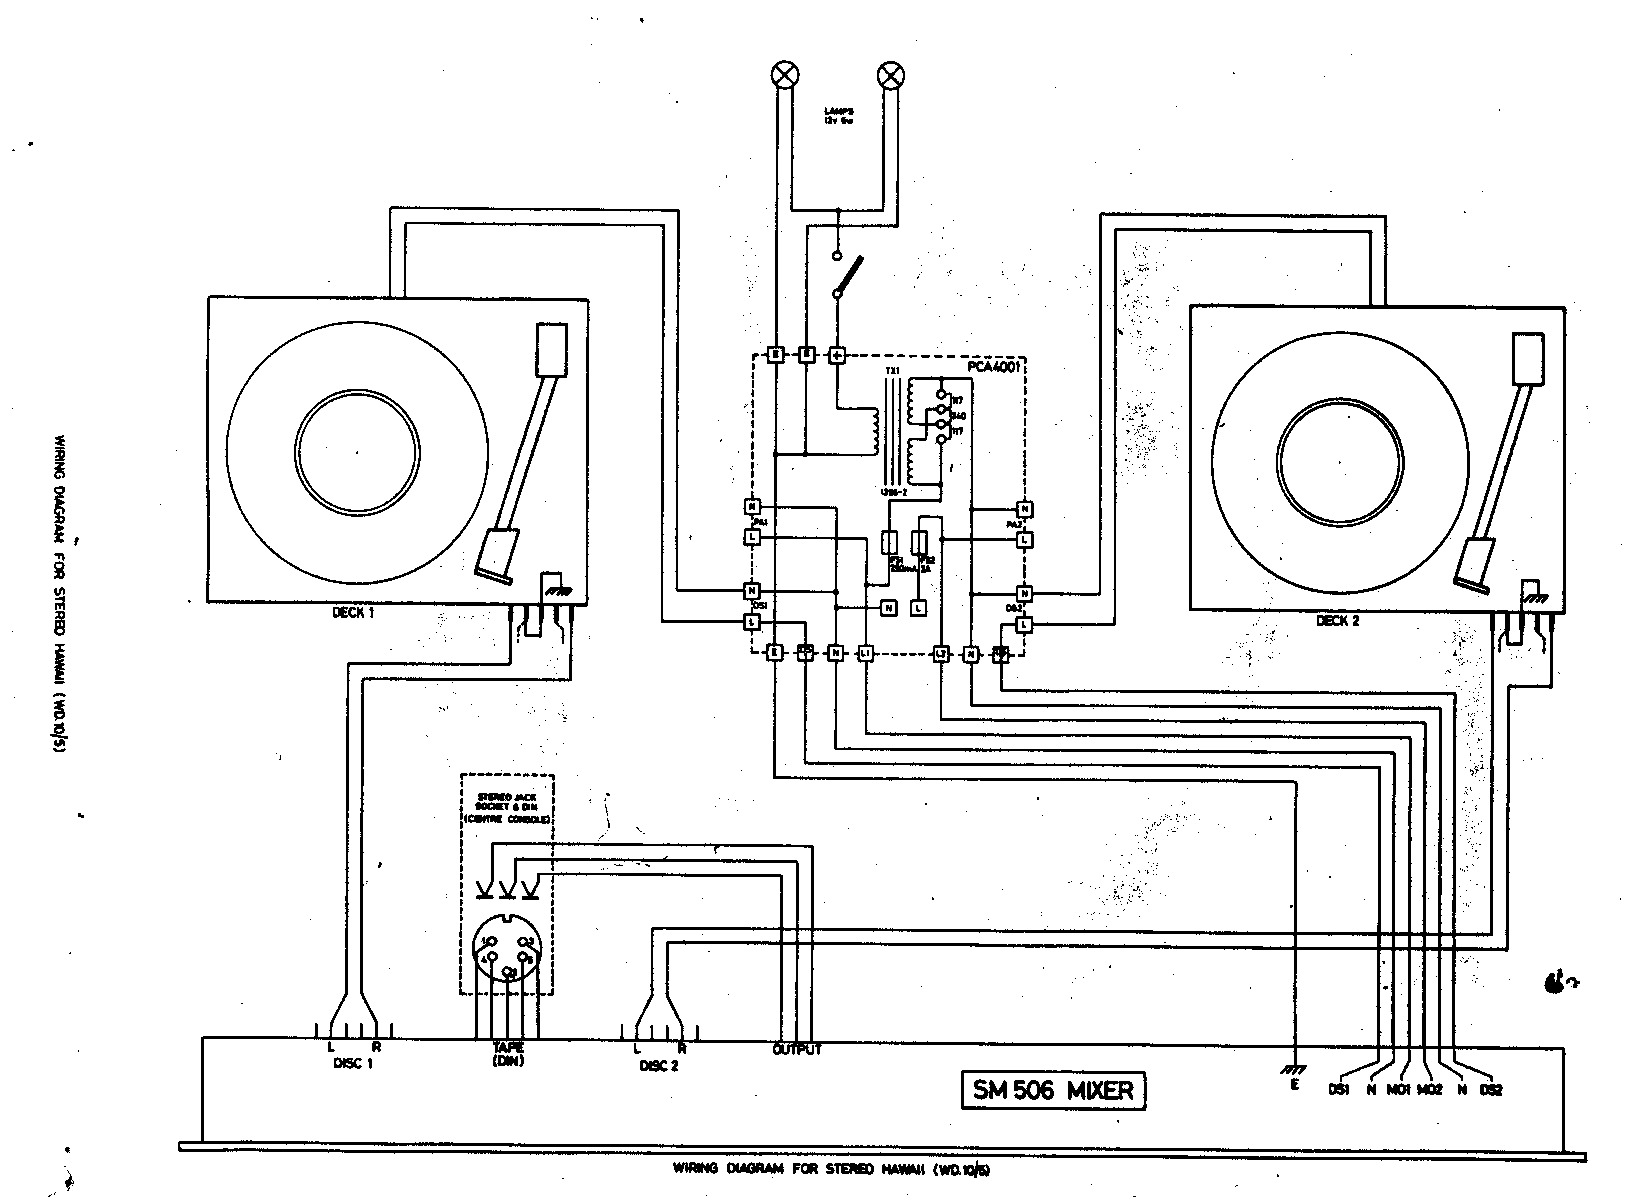 Citronic SM506 DJ Mixer.pdf